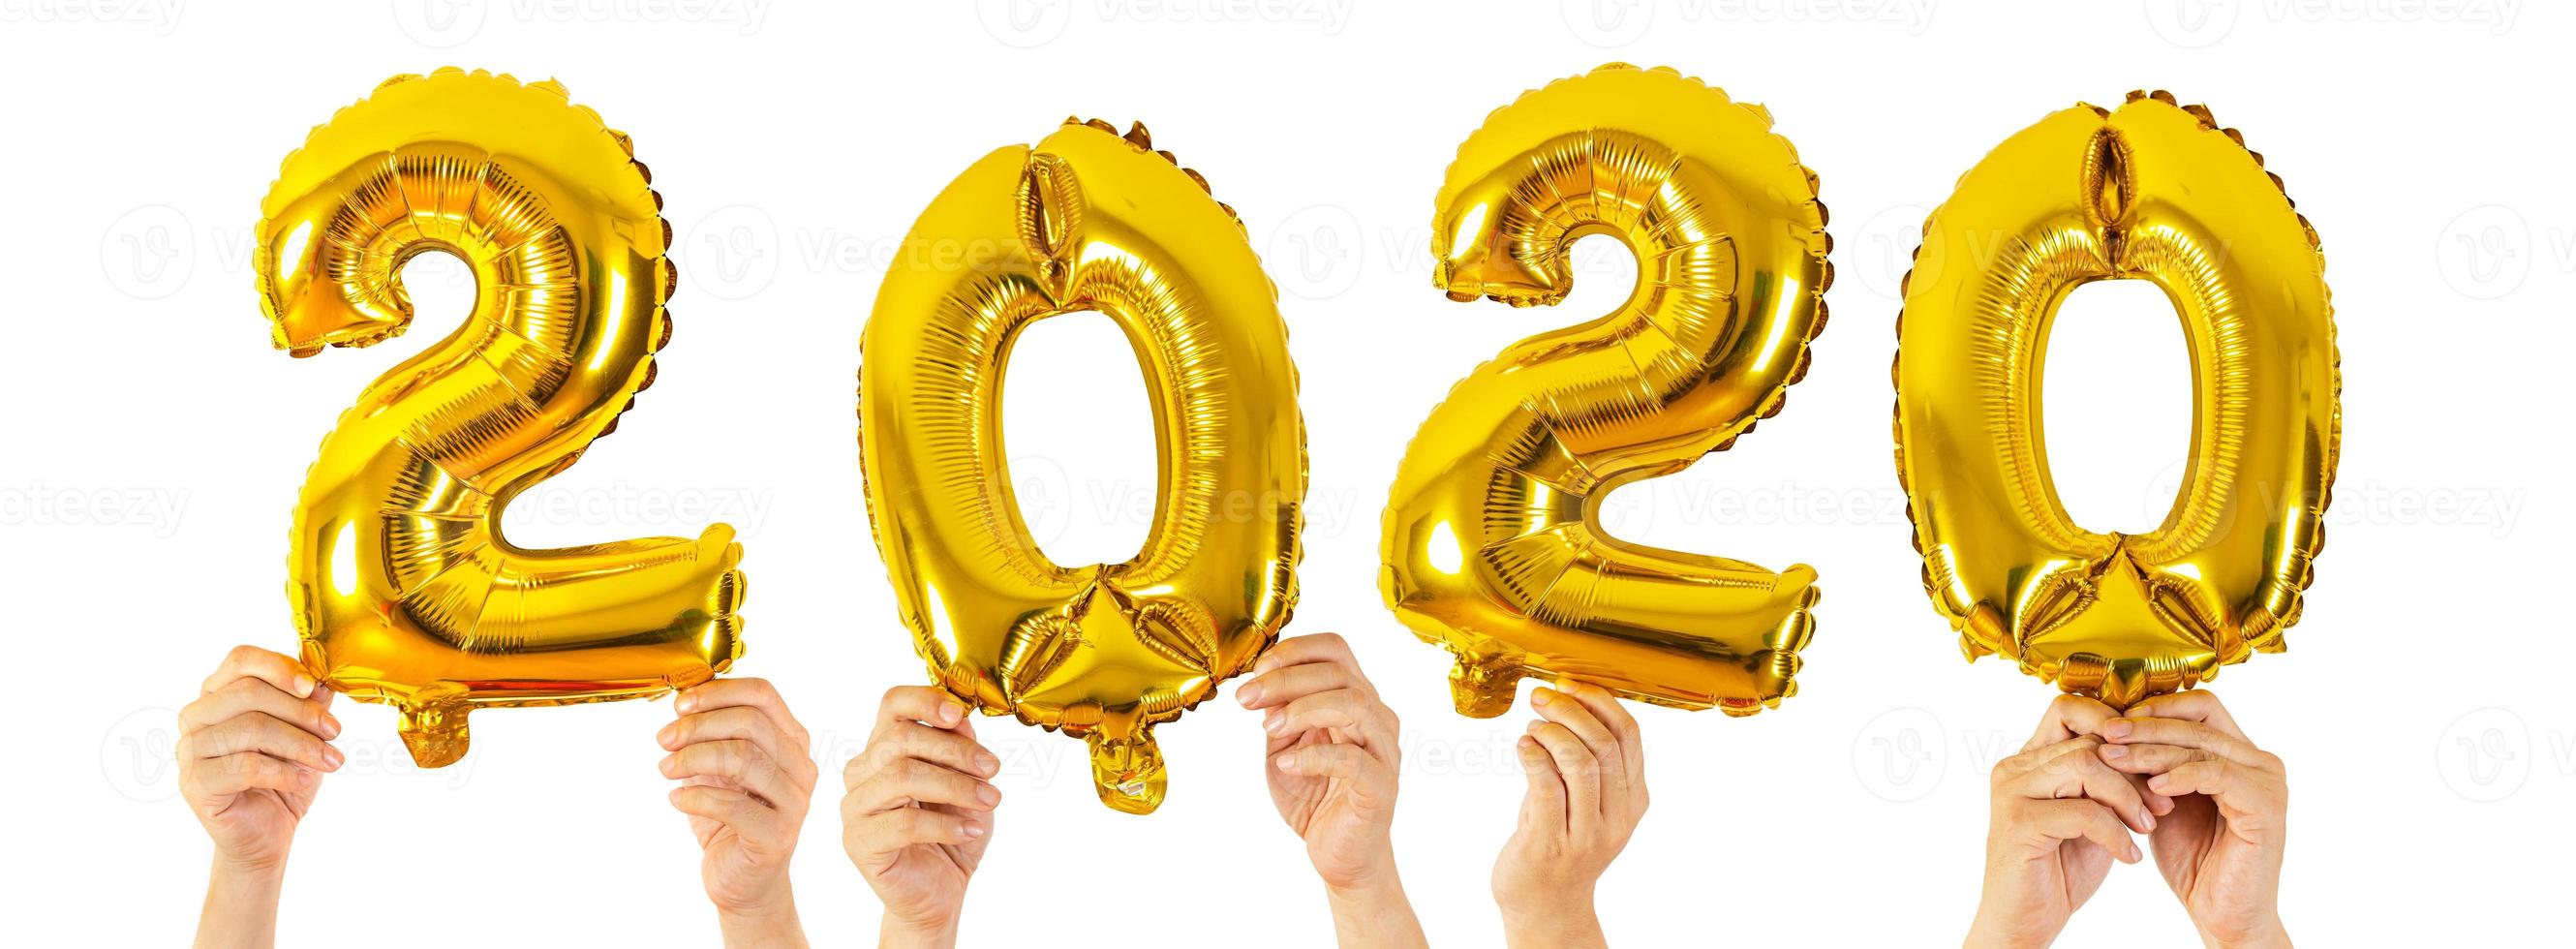 mãos segurando balões com números de 2020 em fundo branco foto